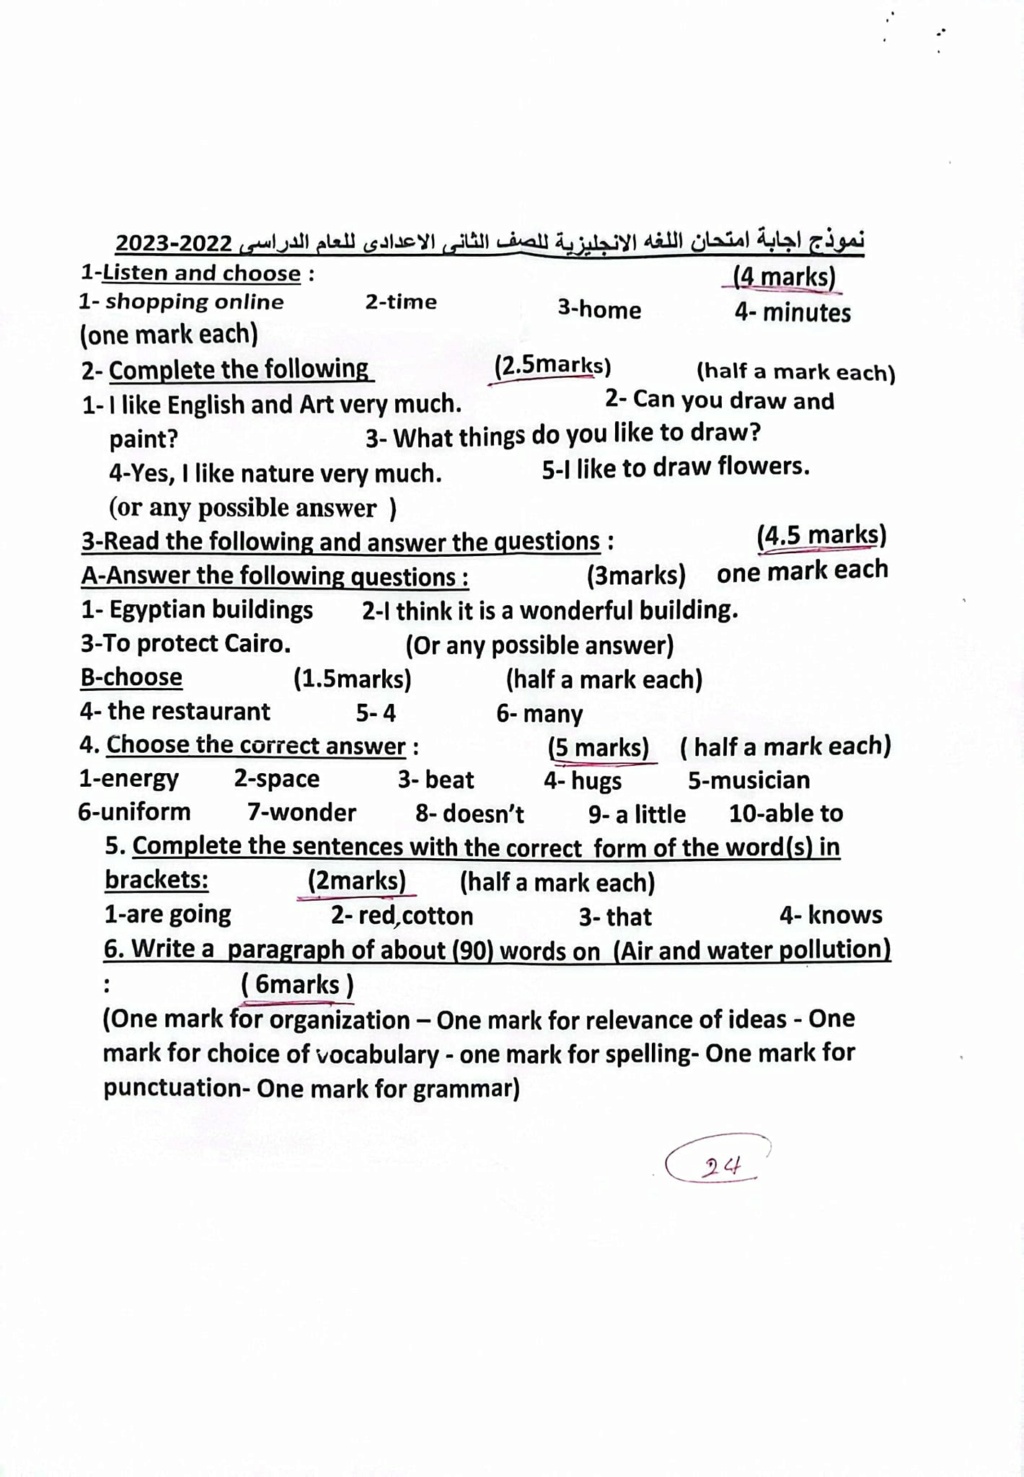 امتحان اللغة الانجليزية للصف الثاني الاعدادي ترم ثاني ٢٠٢٣ مع الإجابة قها قليوبية 1127